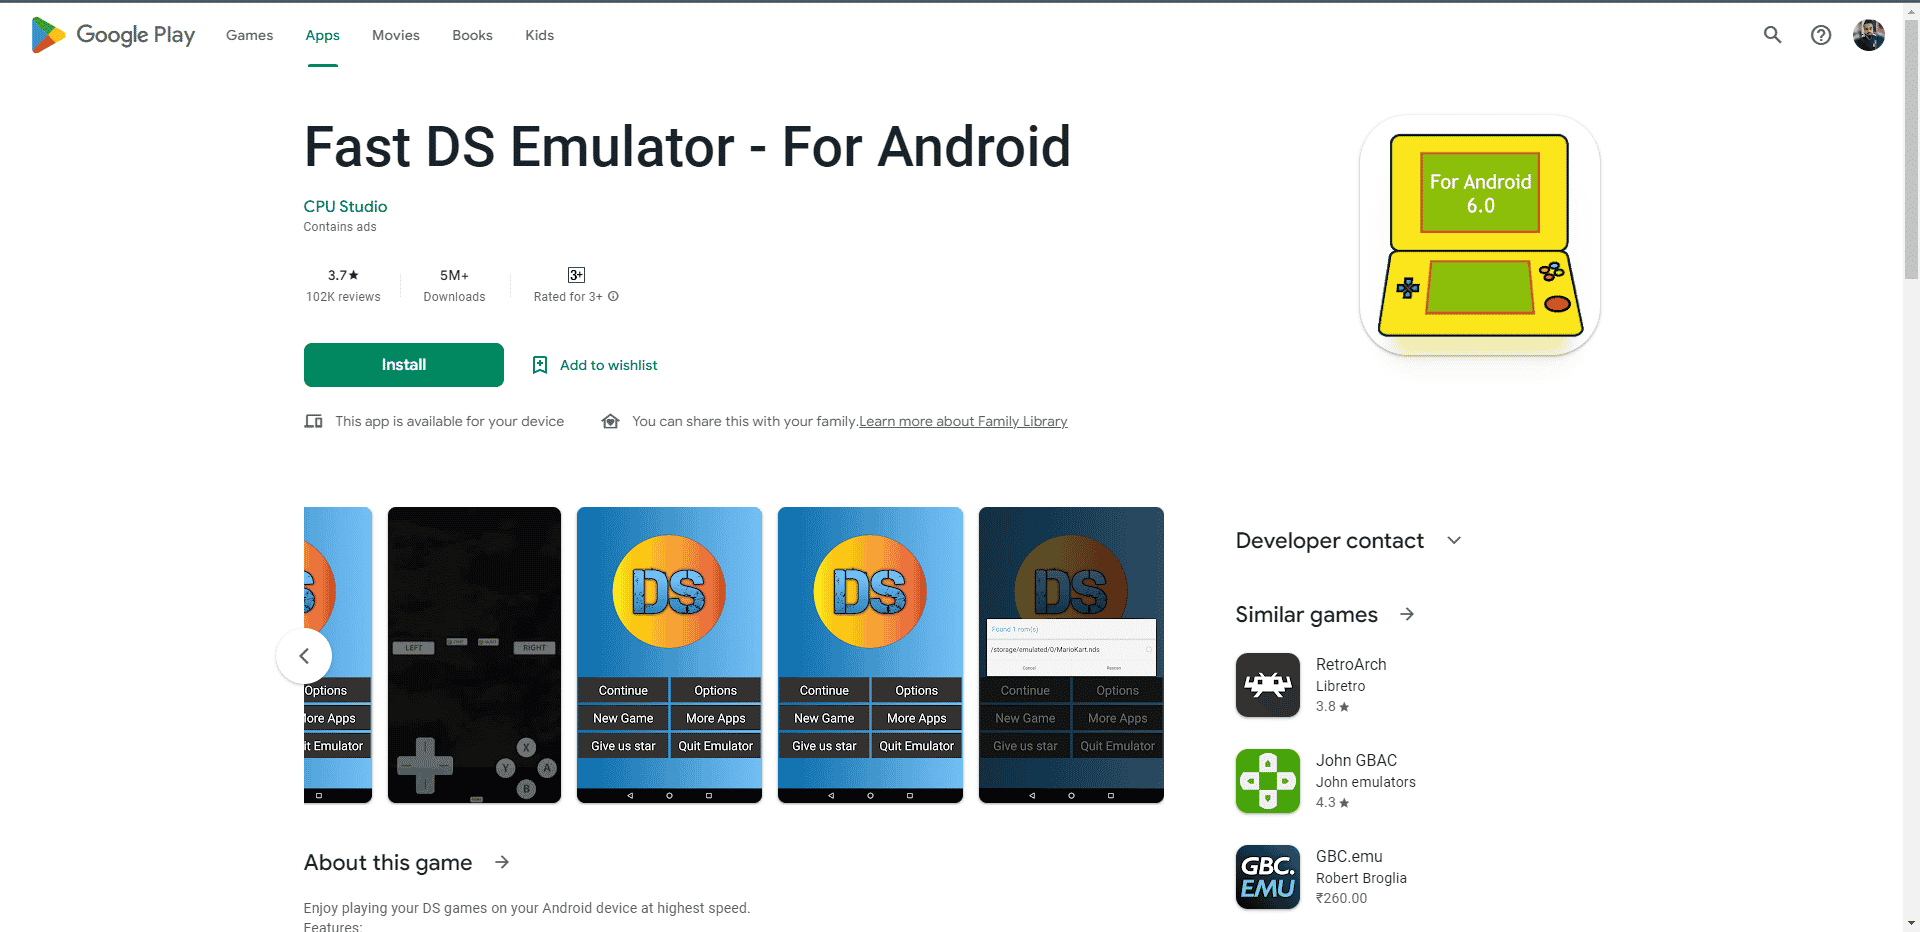 ໄວ DS emulator play store ຫນ້າເວັບ. ດາວໂຫລດ Emulator 3D ທີ່ດີທີ່ສຸດສໍາລັບ Android APK